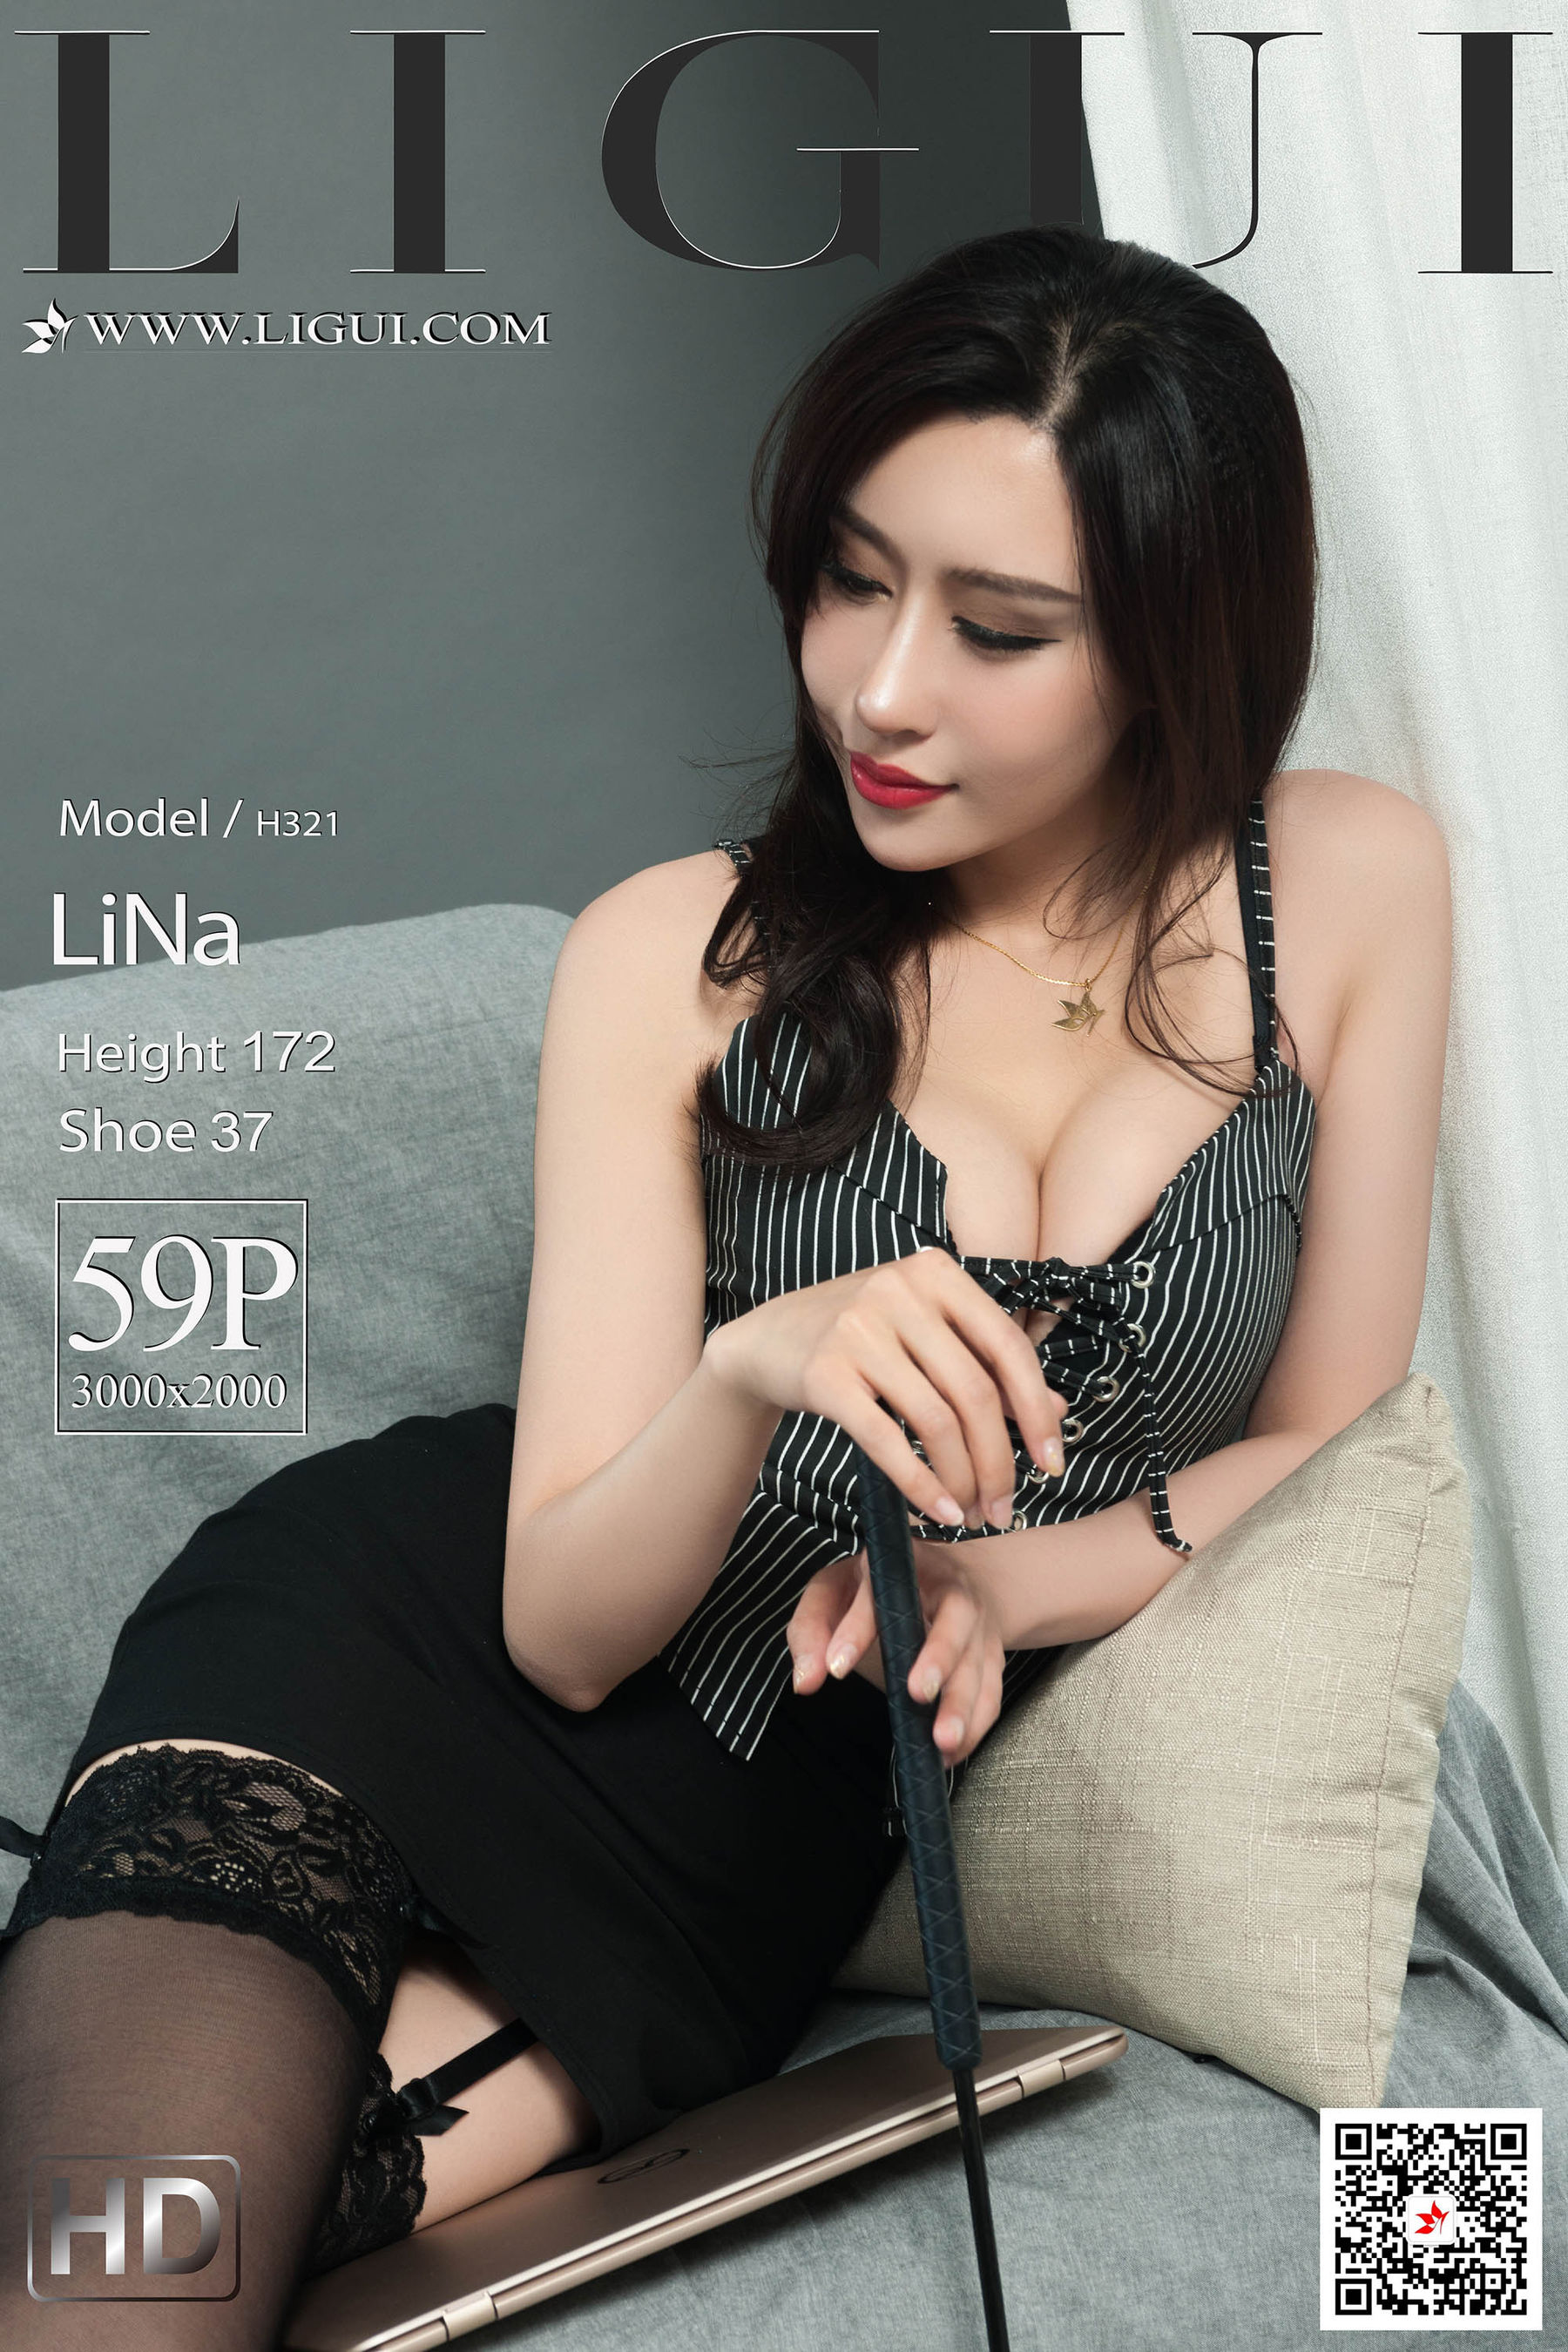 [丽柜Ligui] 网络丽人 Model LiNa-喵次元